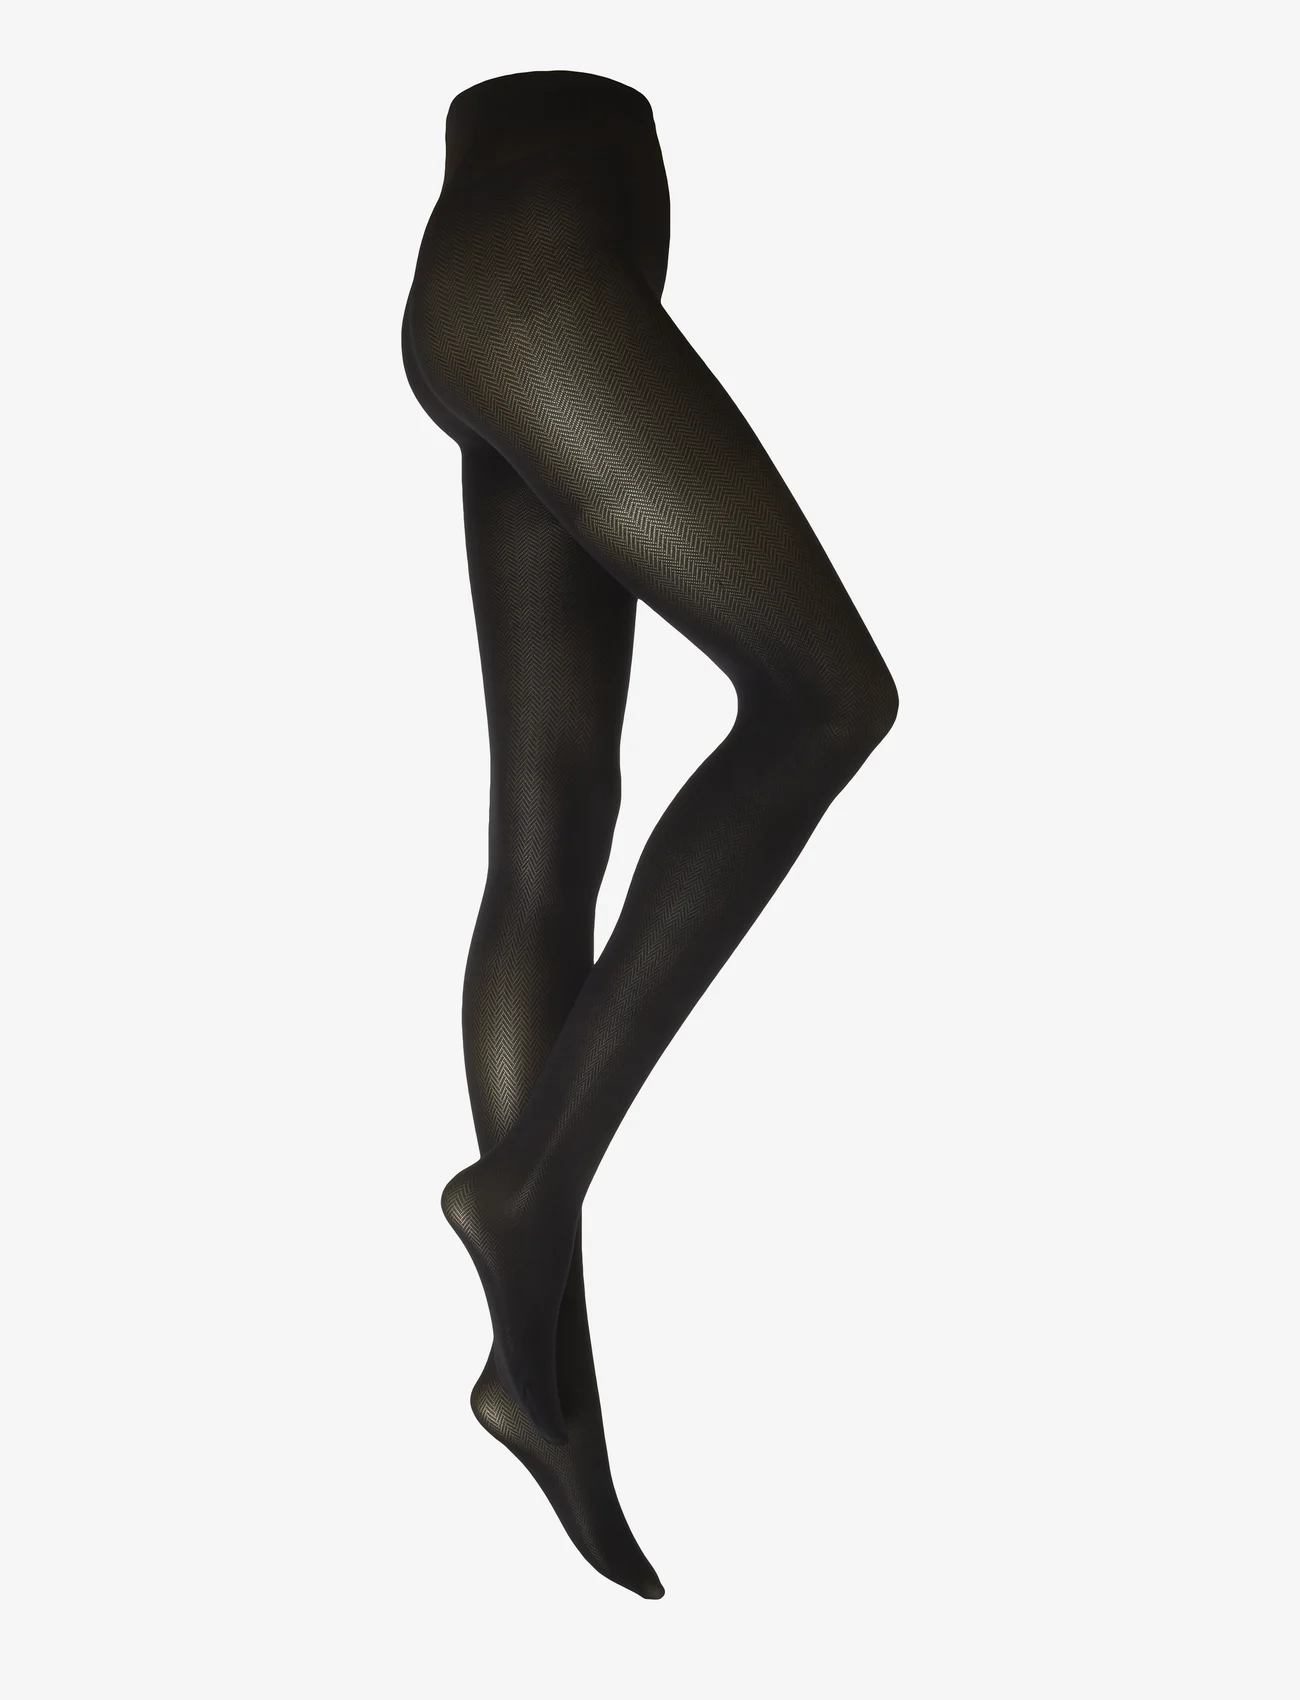 Swedish Stockings - Nina Fishbone tights 40D - black - 1